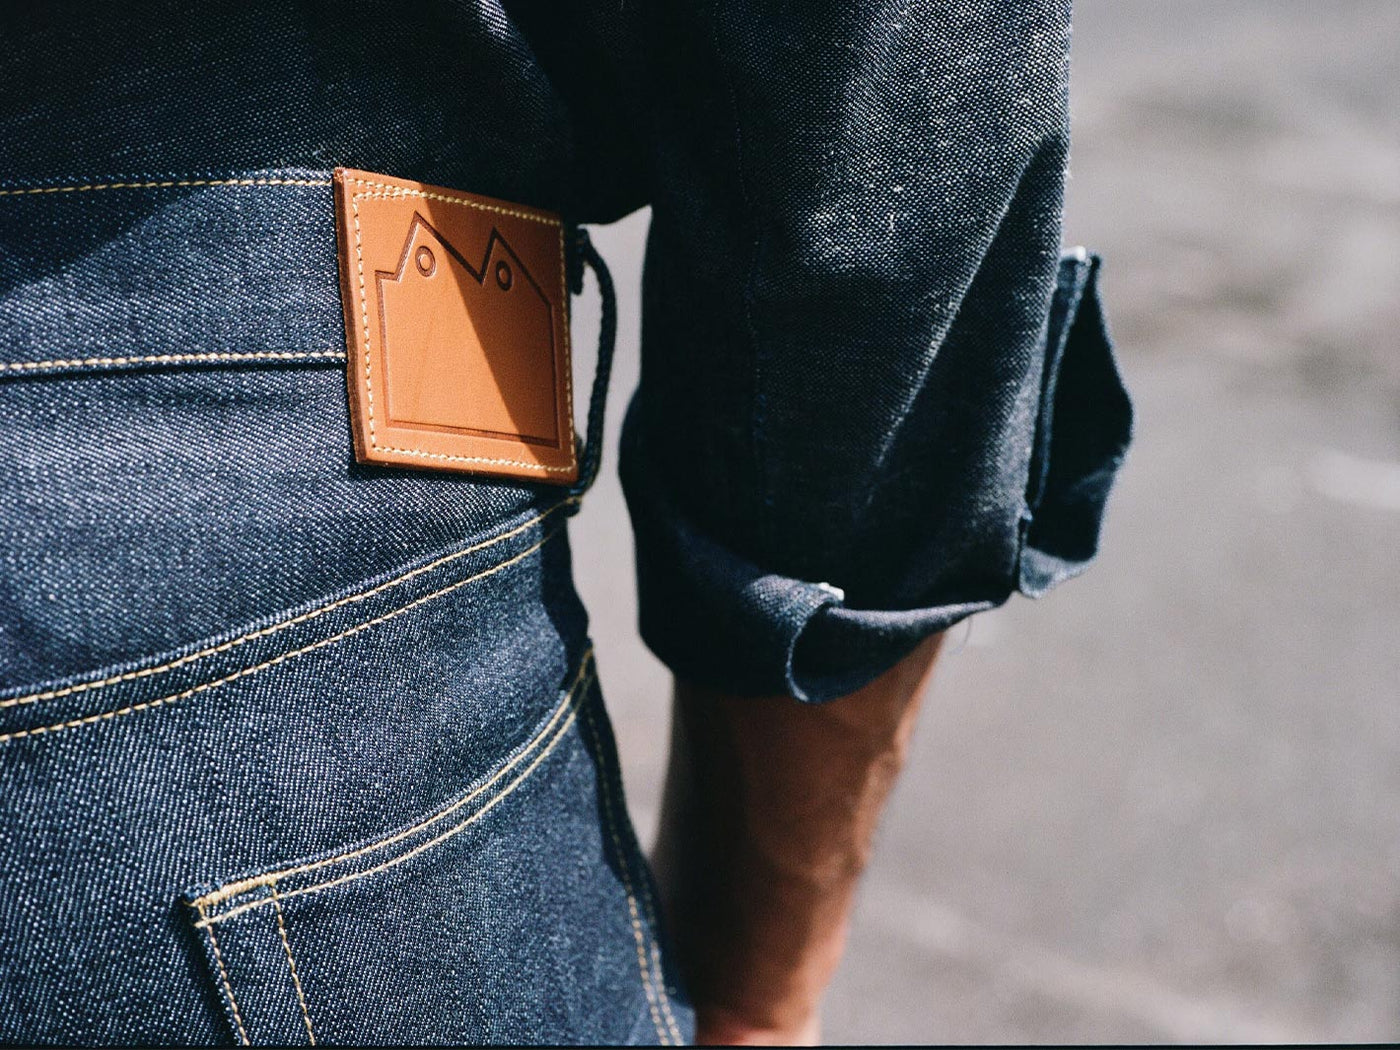 back pocket of a mans jeans